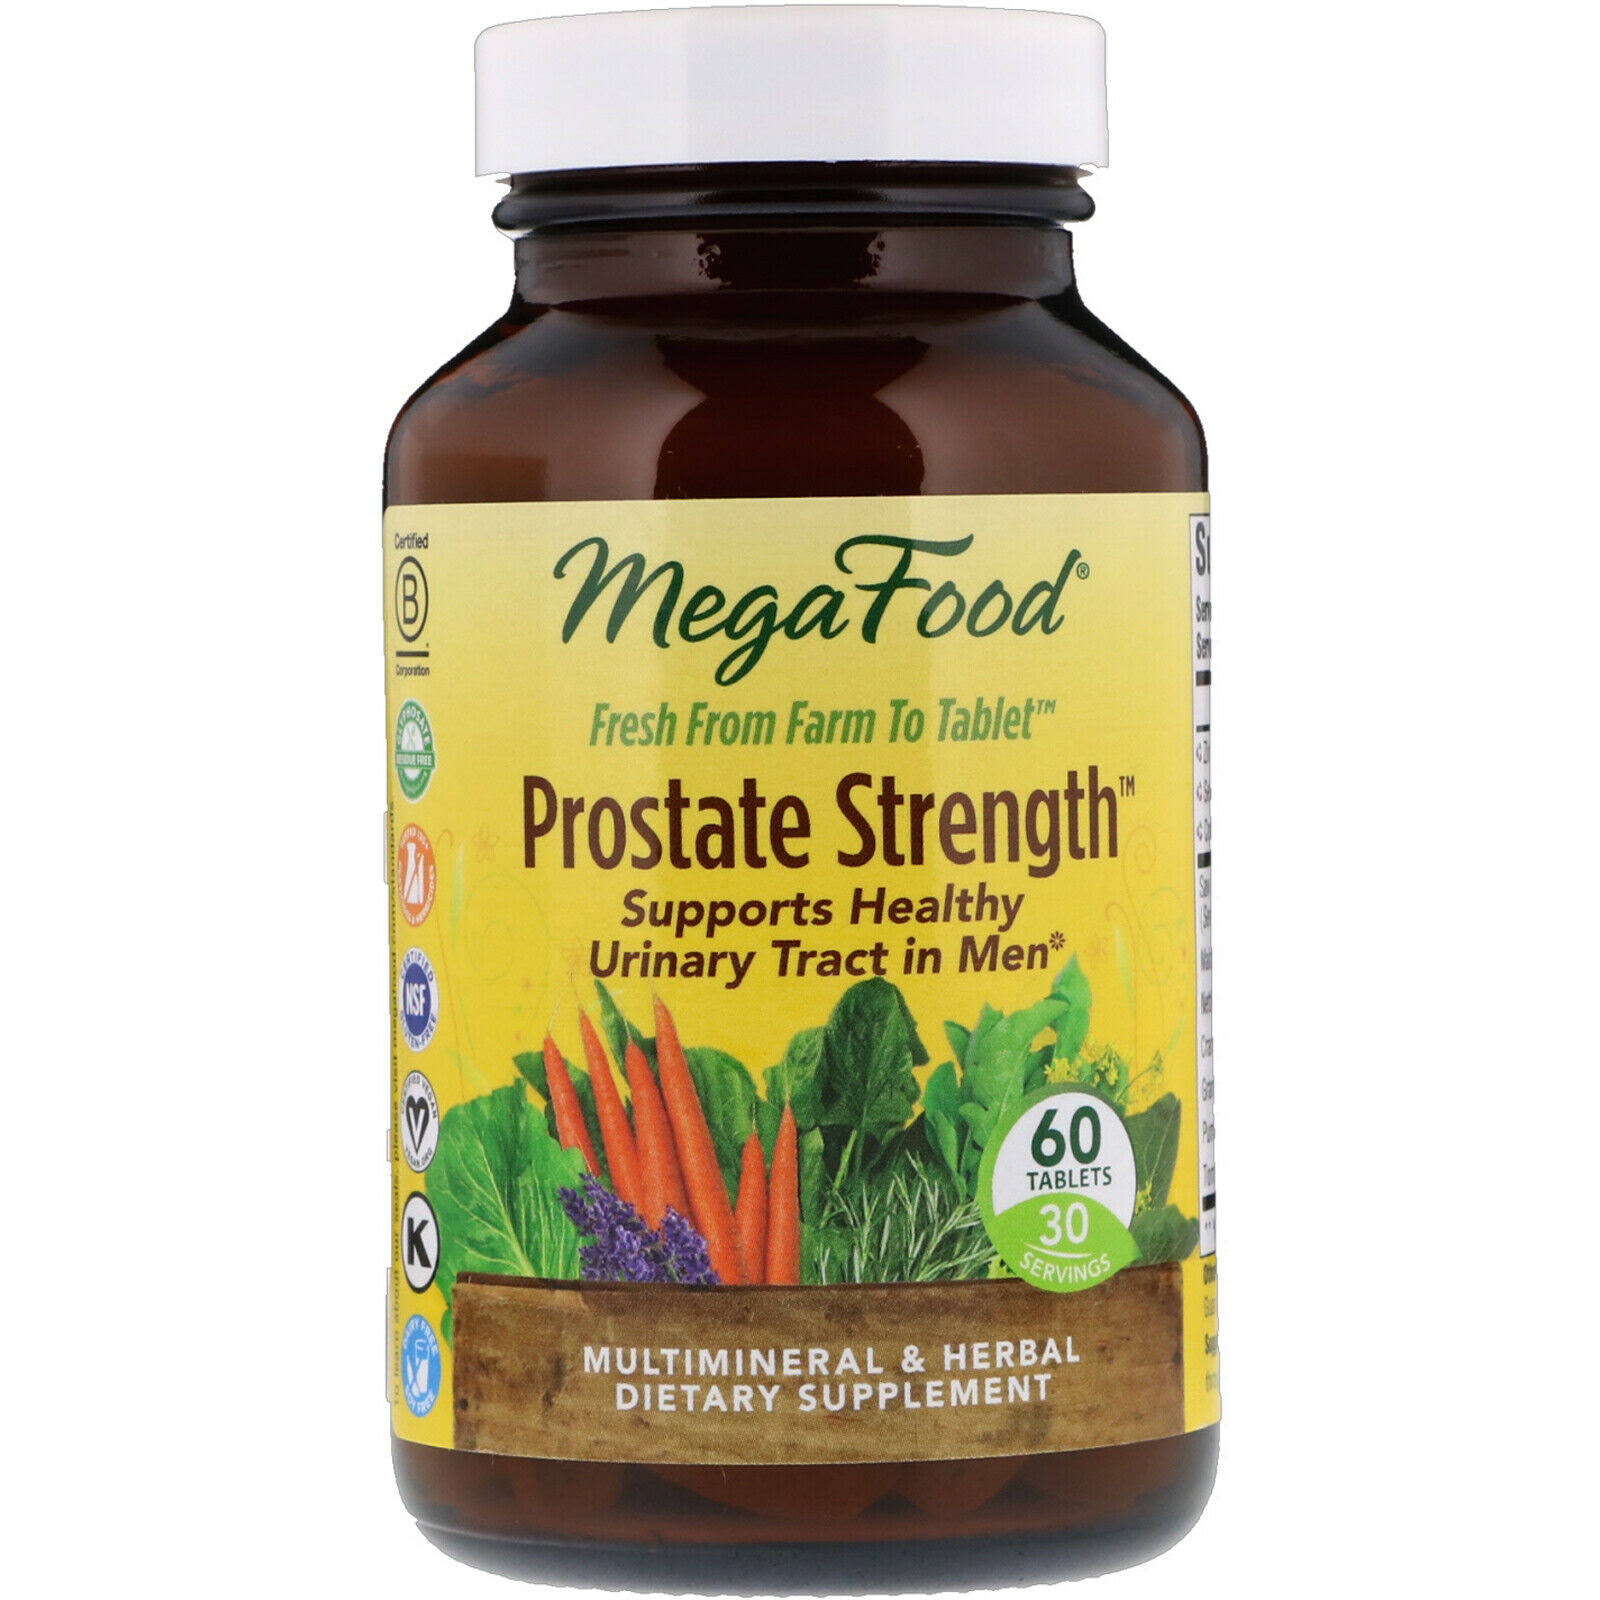 MegaFood Prostate Strength Supplement - 60 Tablets